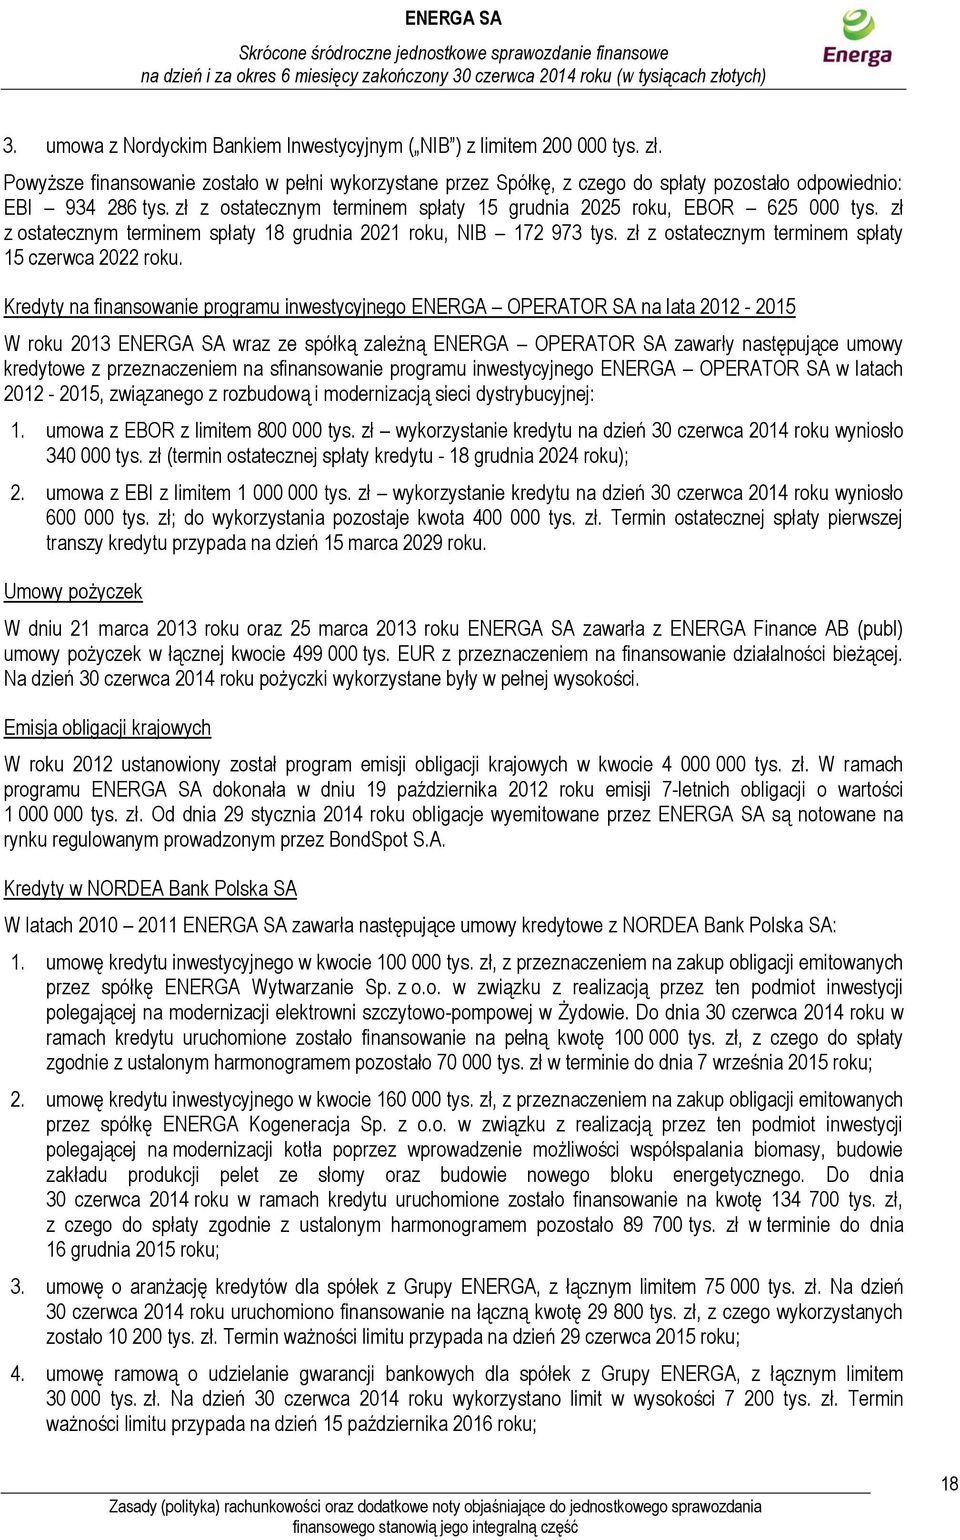 Kredyty na finansowanie programu inwestycyjnego ENERGA OPERATOR SA na lata 2012-2015 W roku 2013 ENERGA SA wraz ze spółką zależną ENERGA OPERATOR SA zawarły następujące umowy kredytowe z